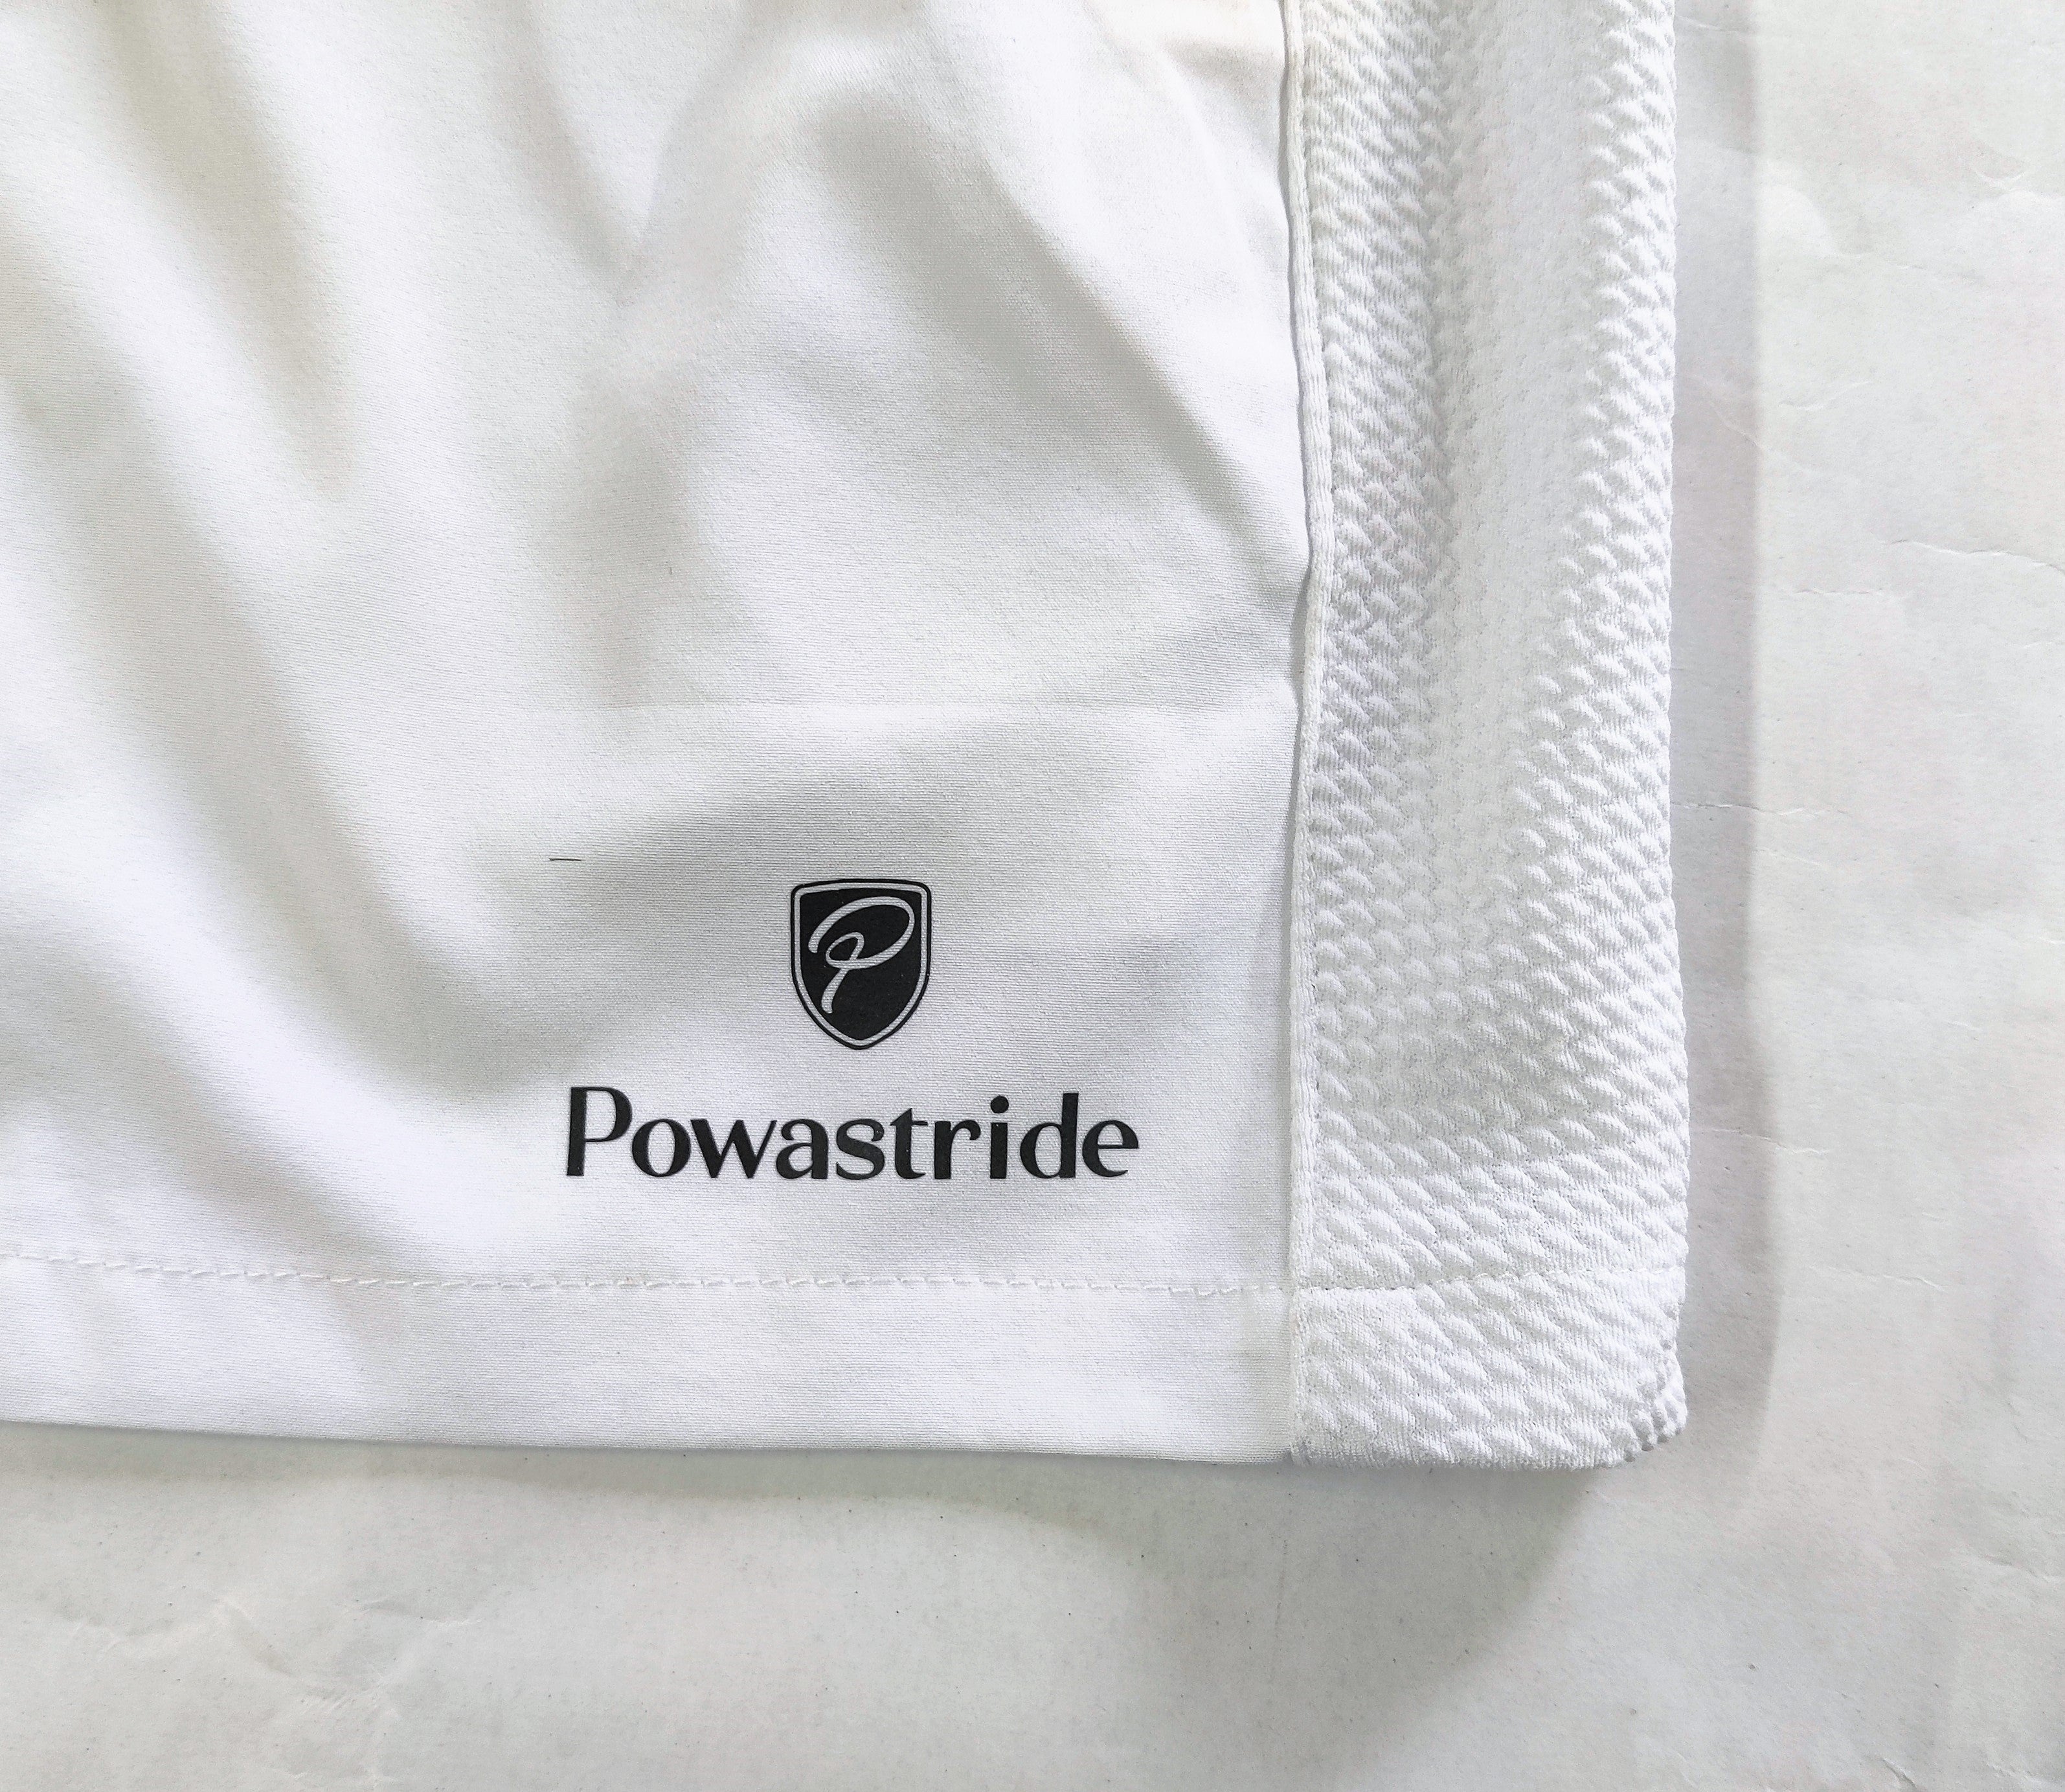 Powastride Badminton Shorts with Zipper Pockets